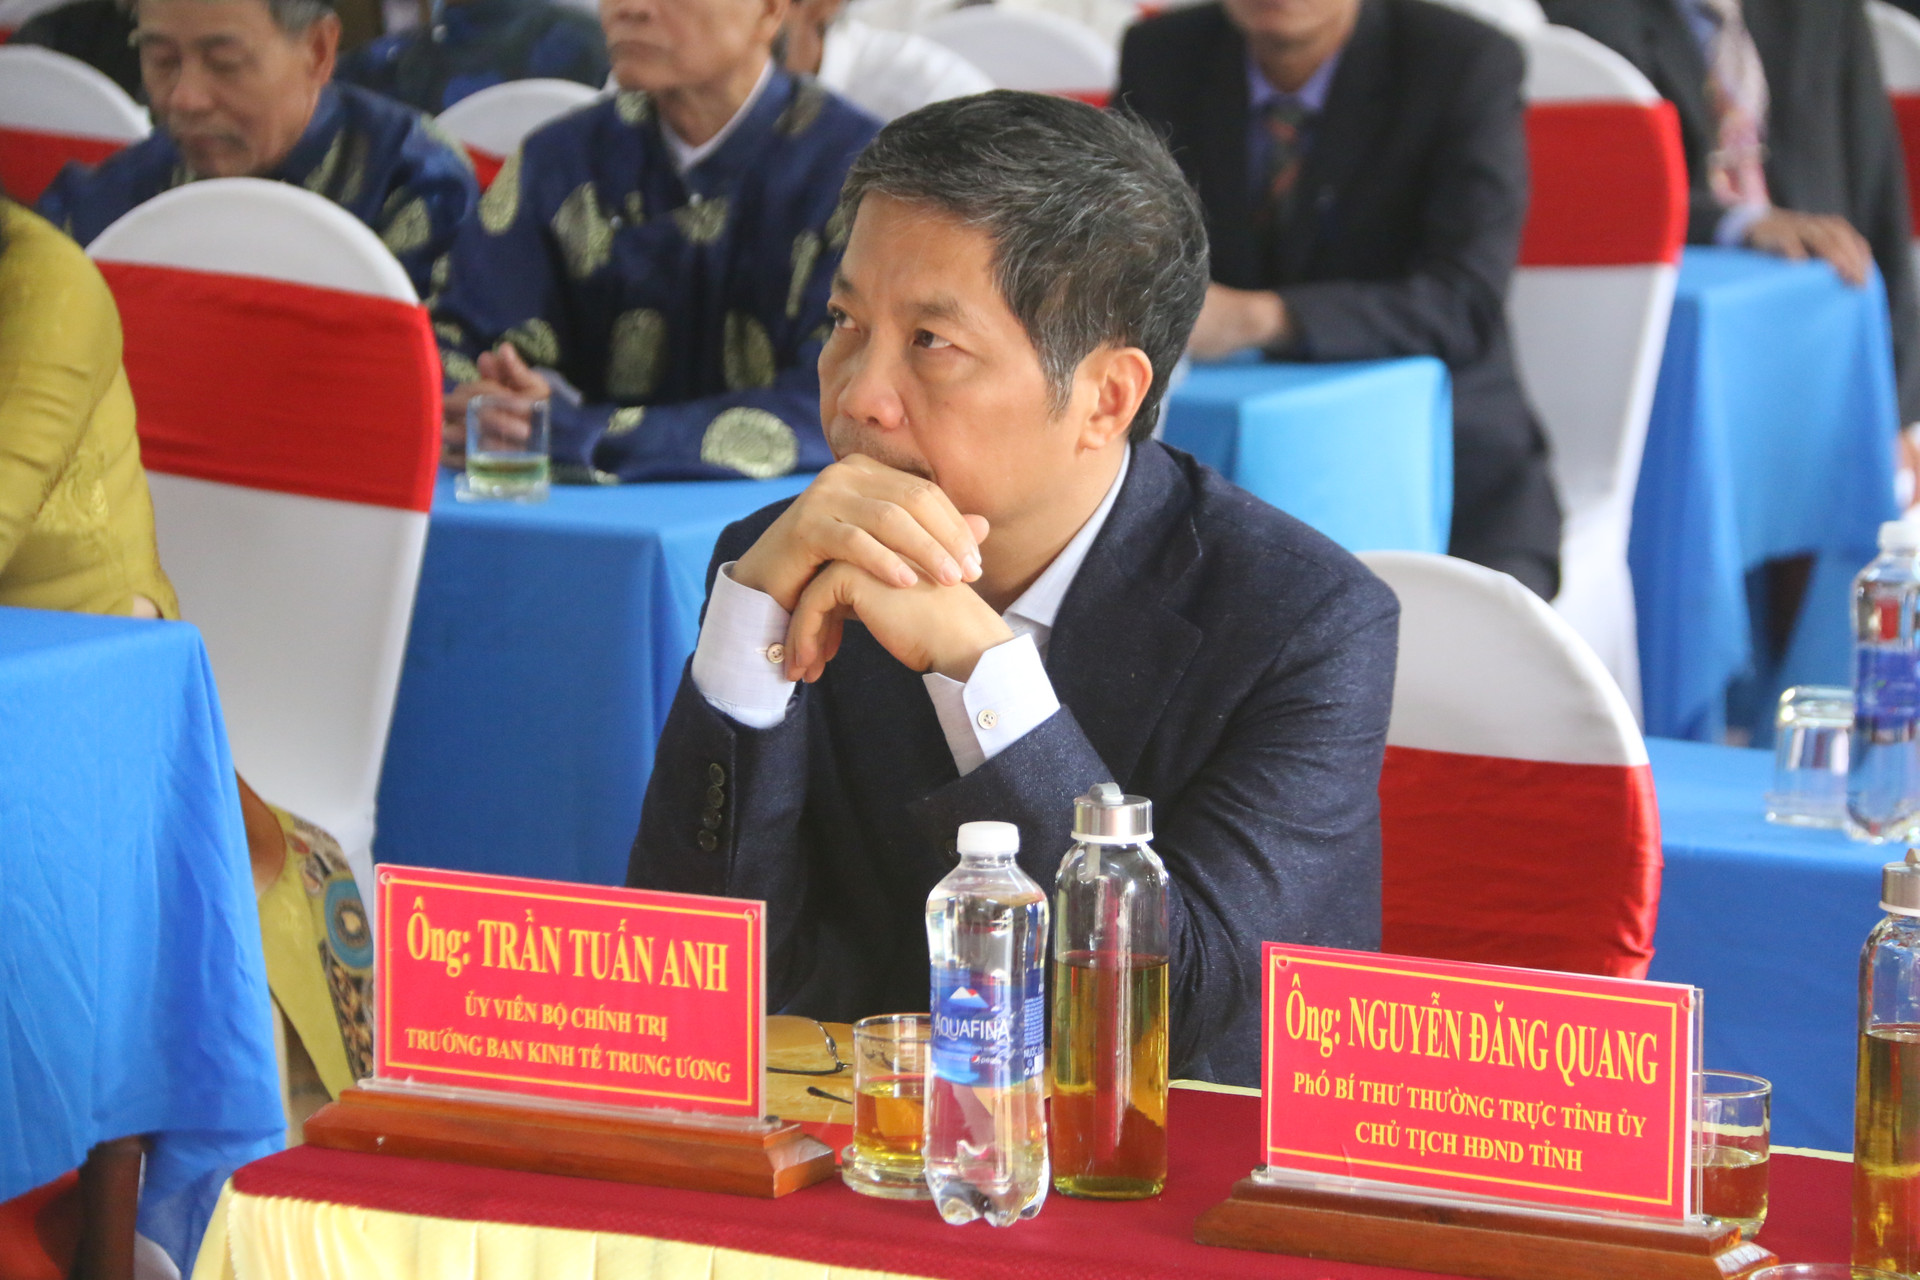 Tham dự Ngày hội có: ông Trần Tuấn Anh, Ủy viên Bộ Chính trị, Trưởng ban Kinh tế Trung ương.